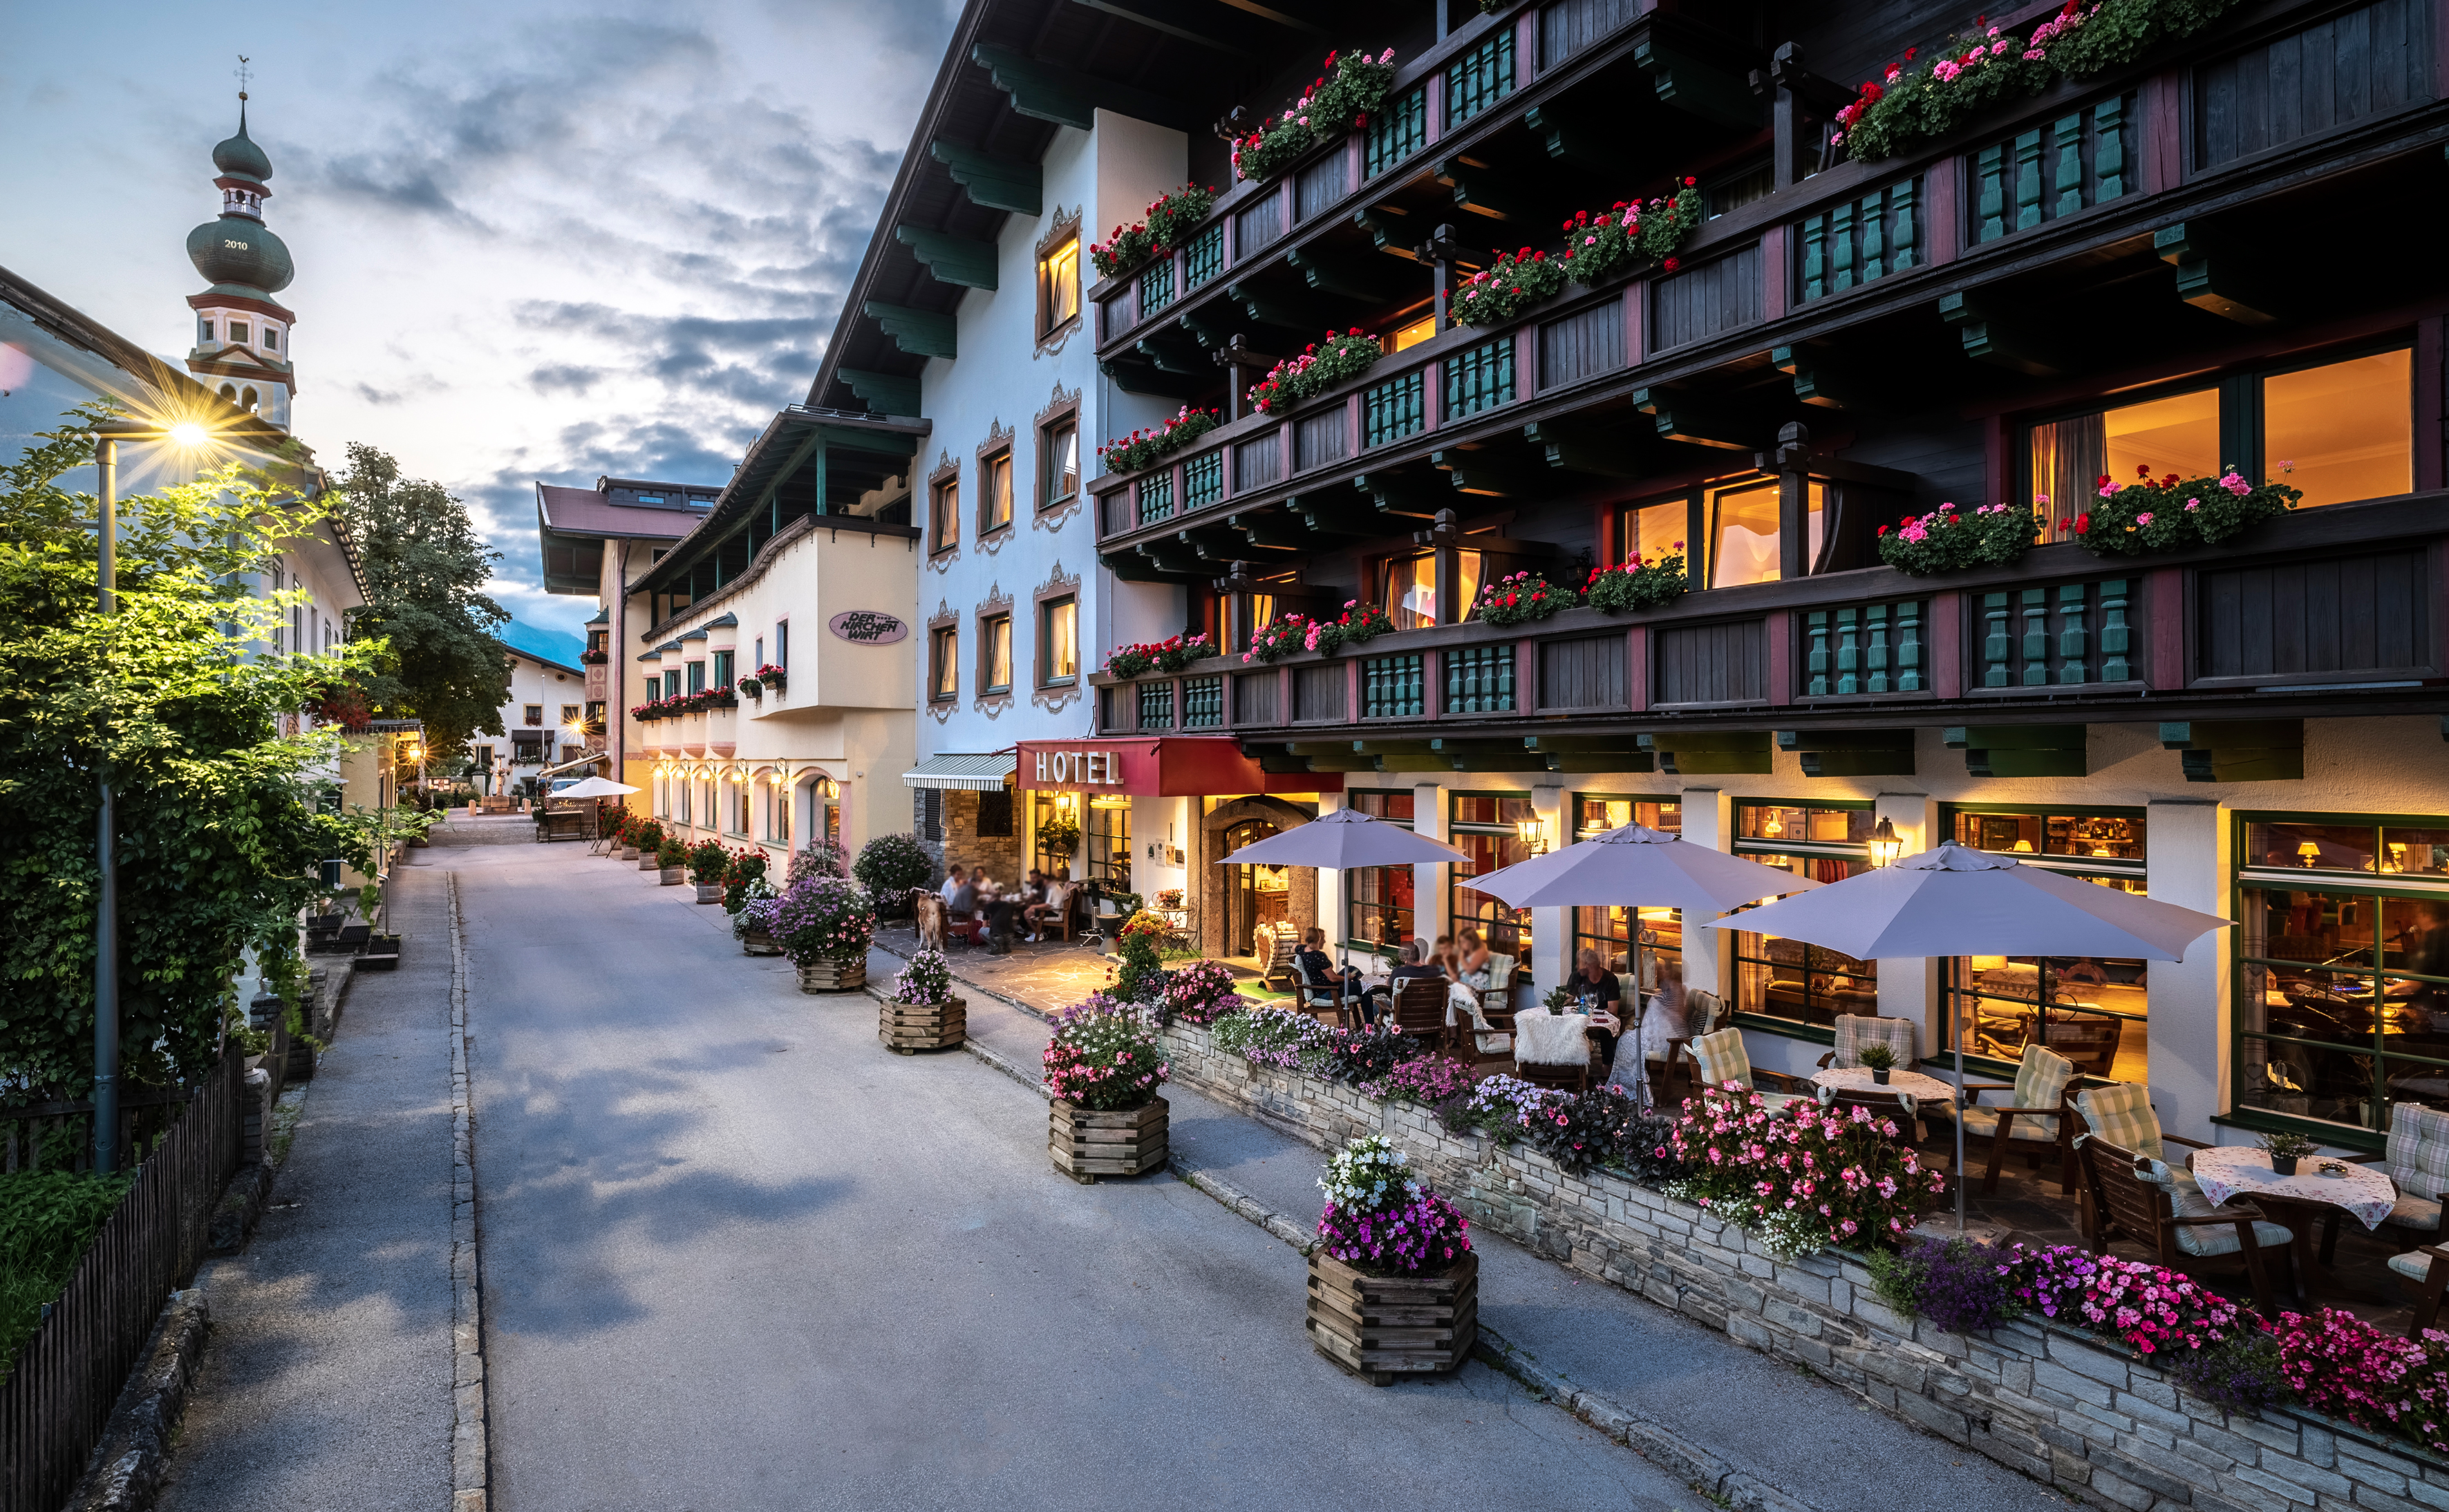 Gutschein im Wert von 1.000 Euro für den Kirchenwirt im Tiroler Alpbachtal